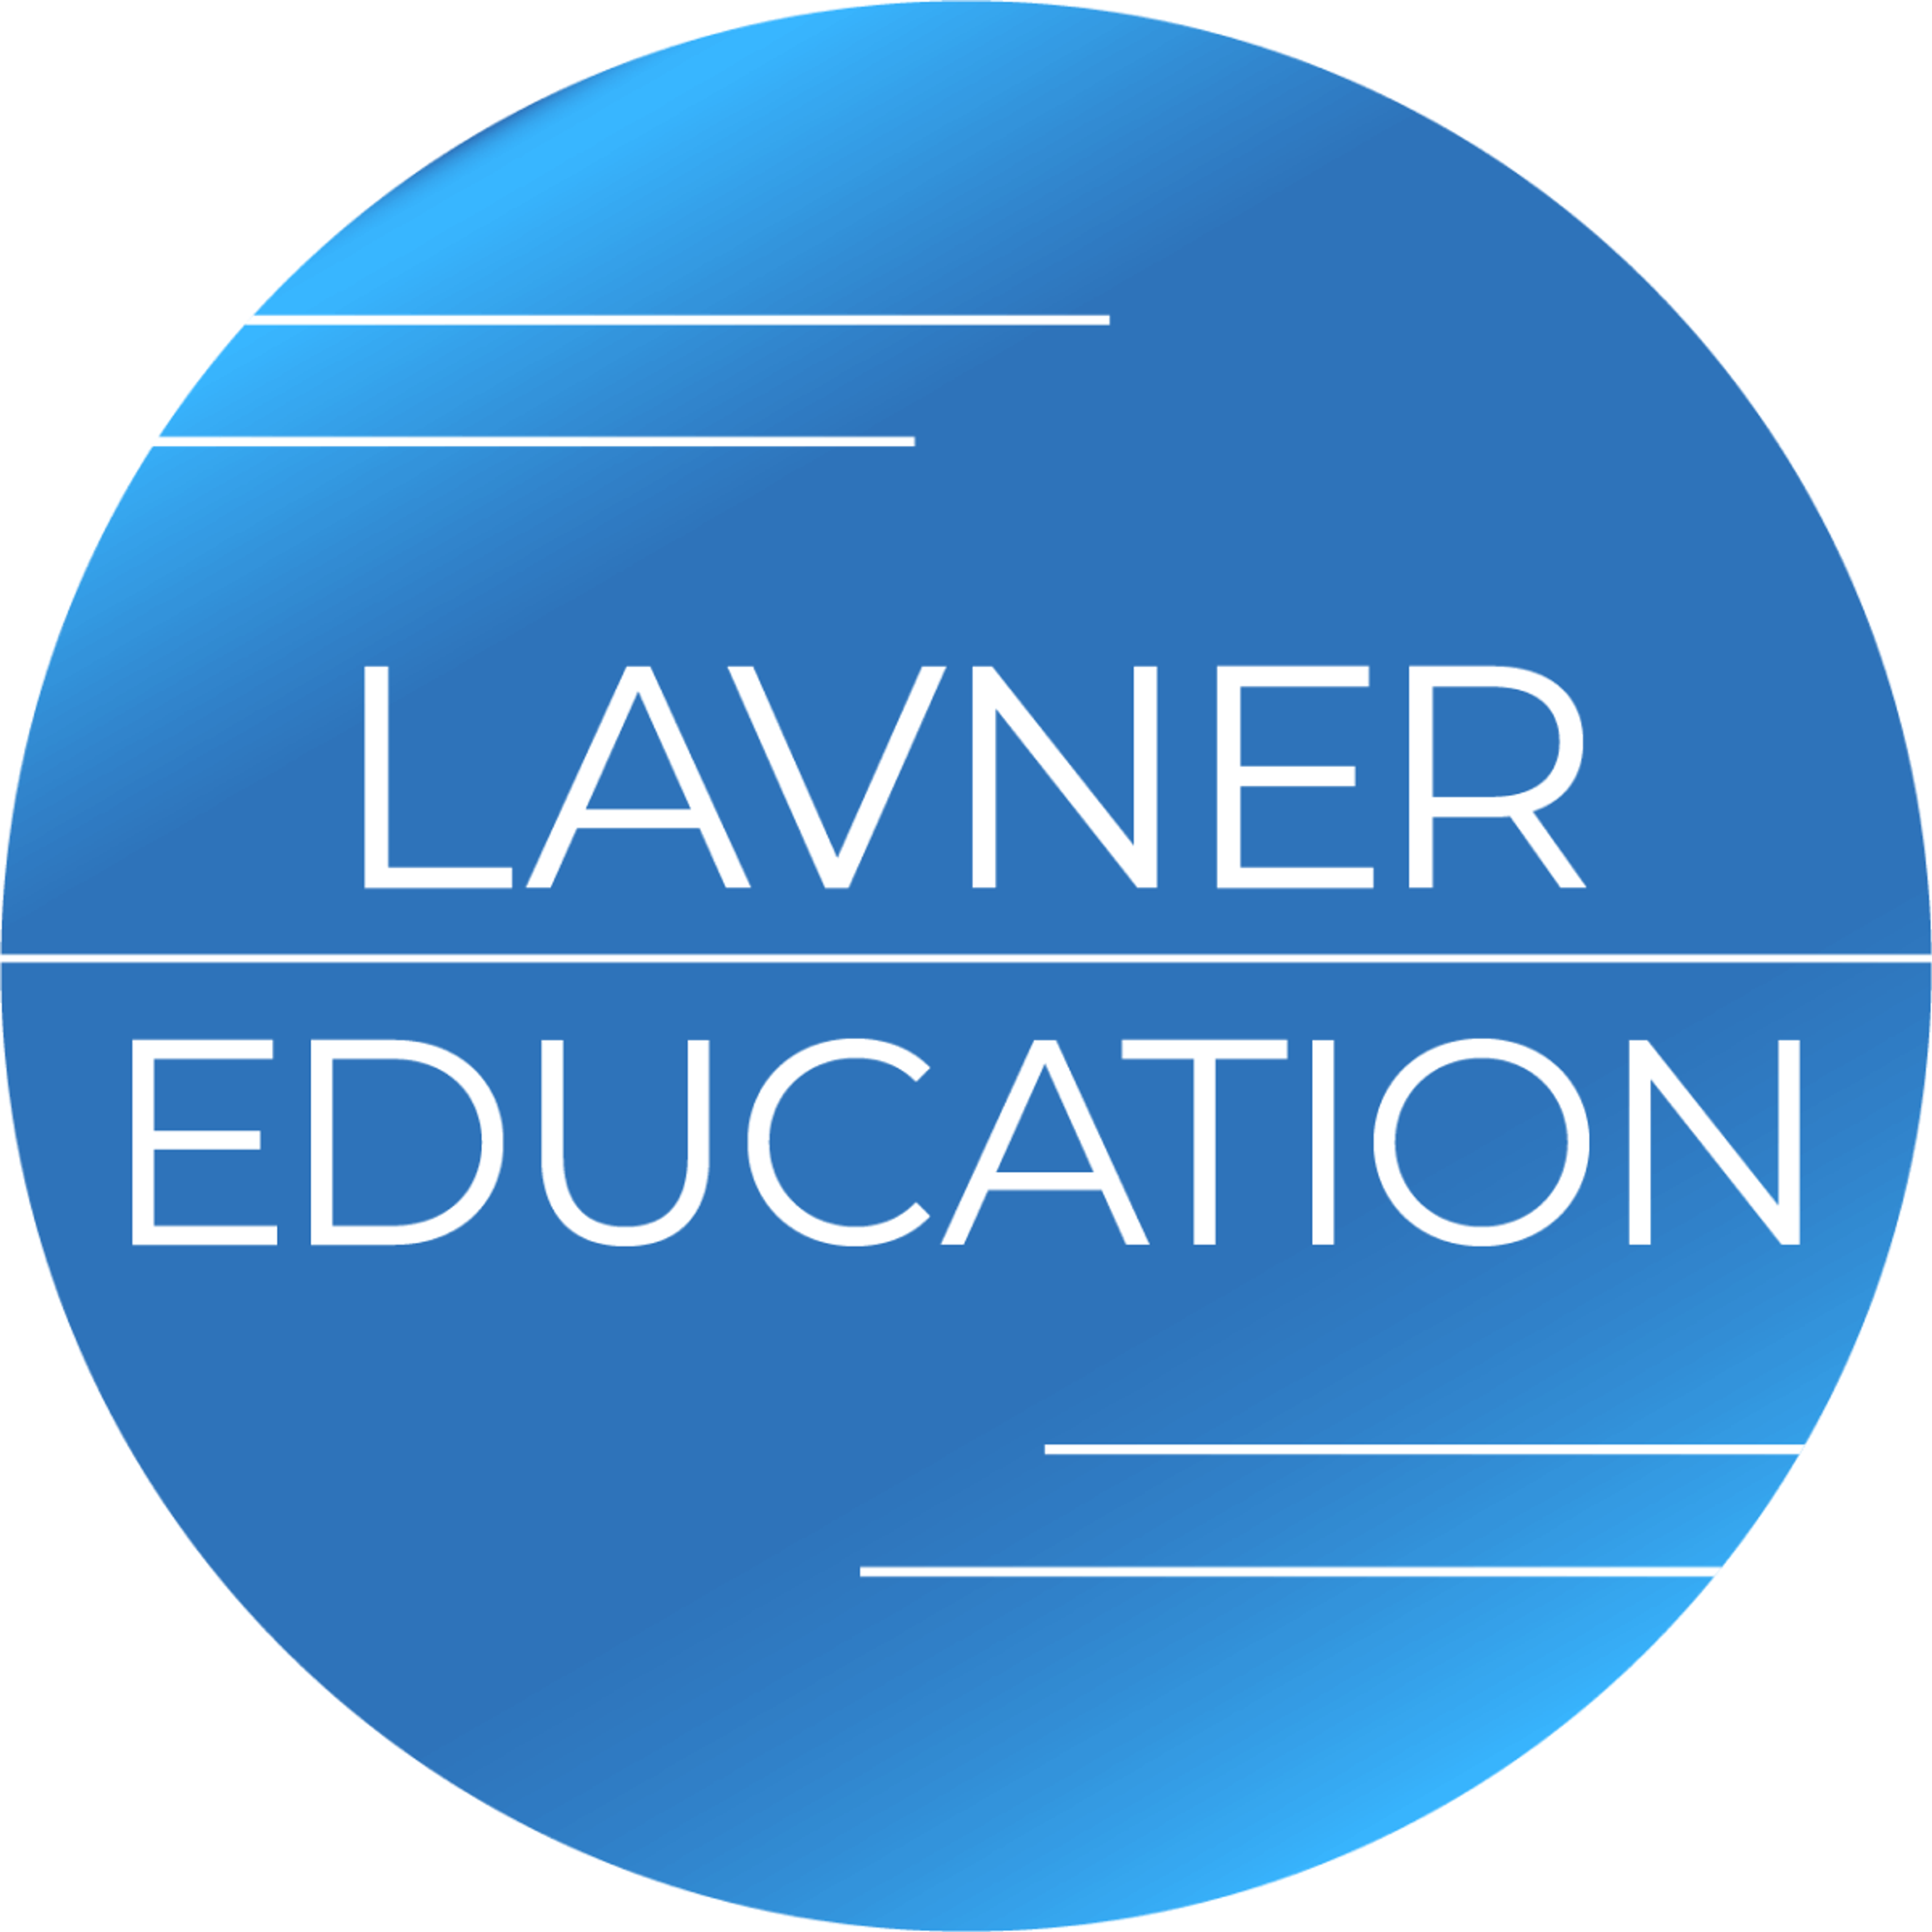 Lavner Education